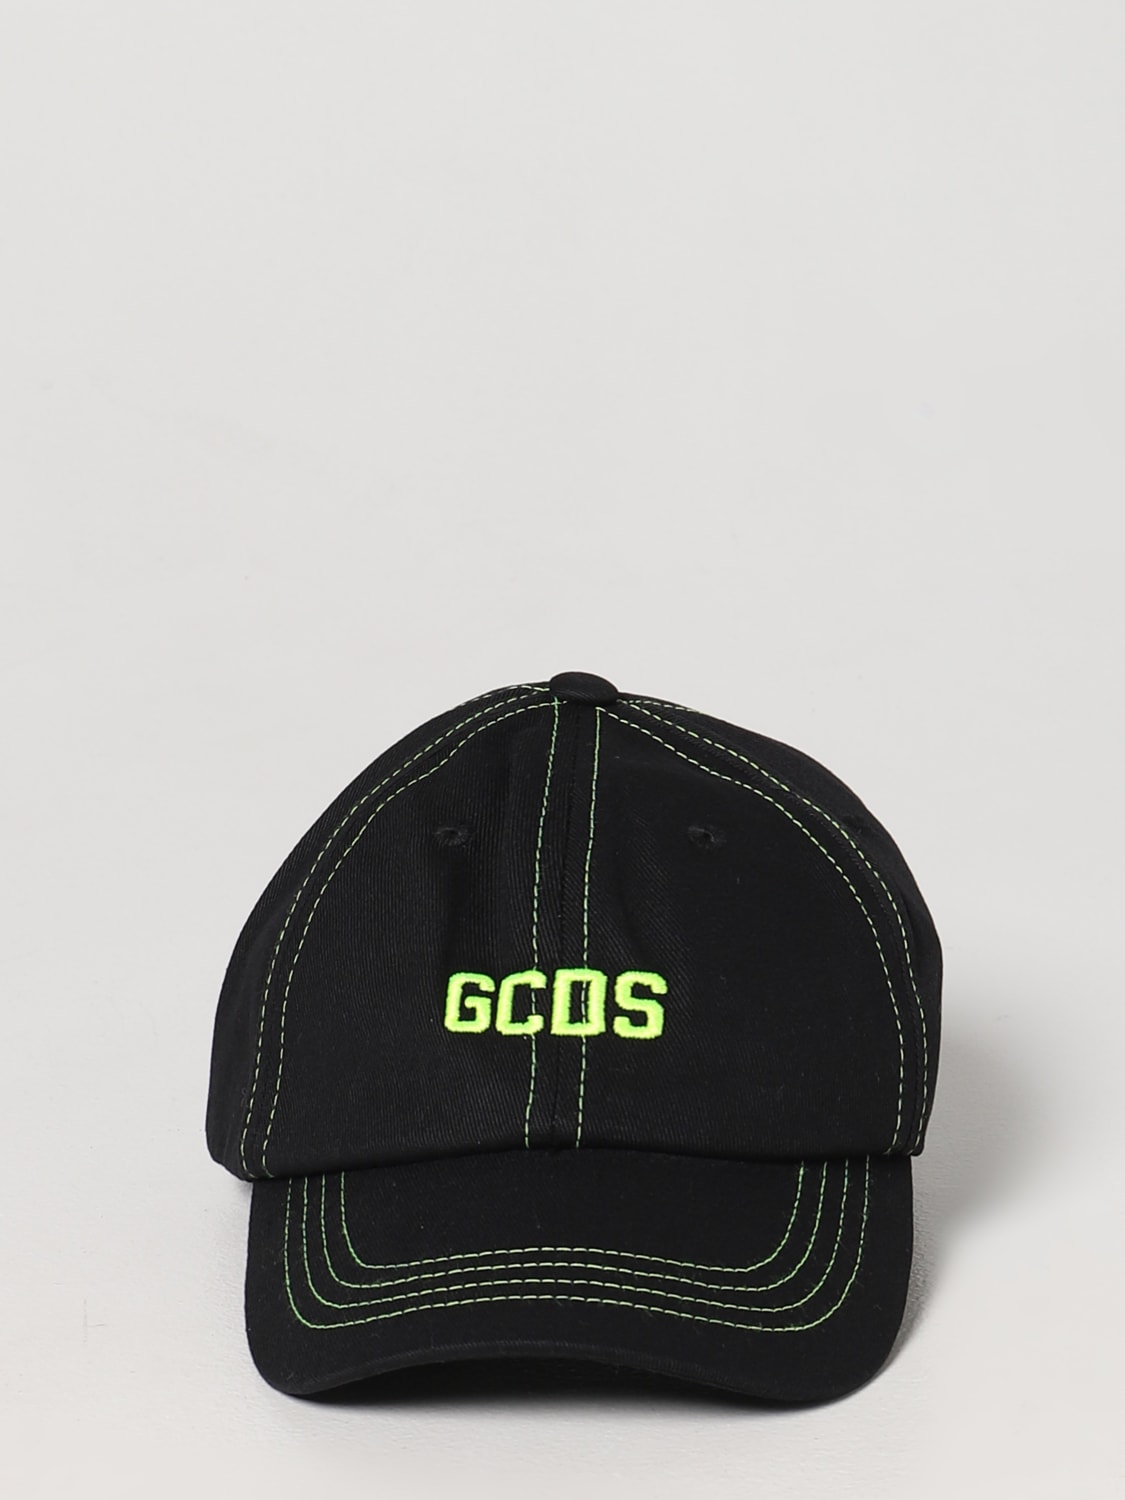 HOT爆買い GCDS 帽子 Z7dFY-m27360186606